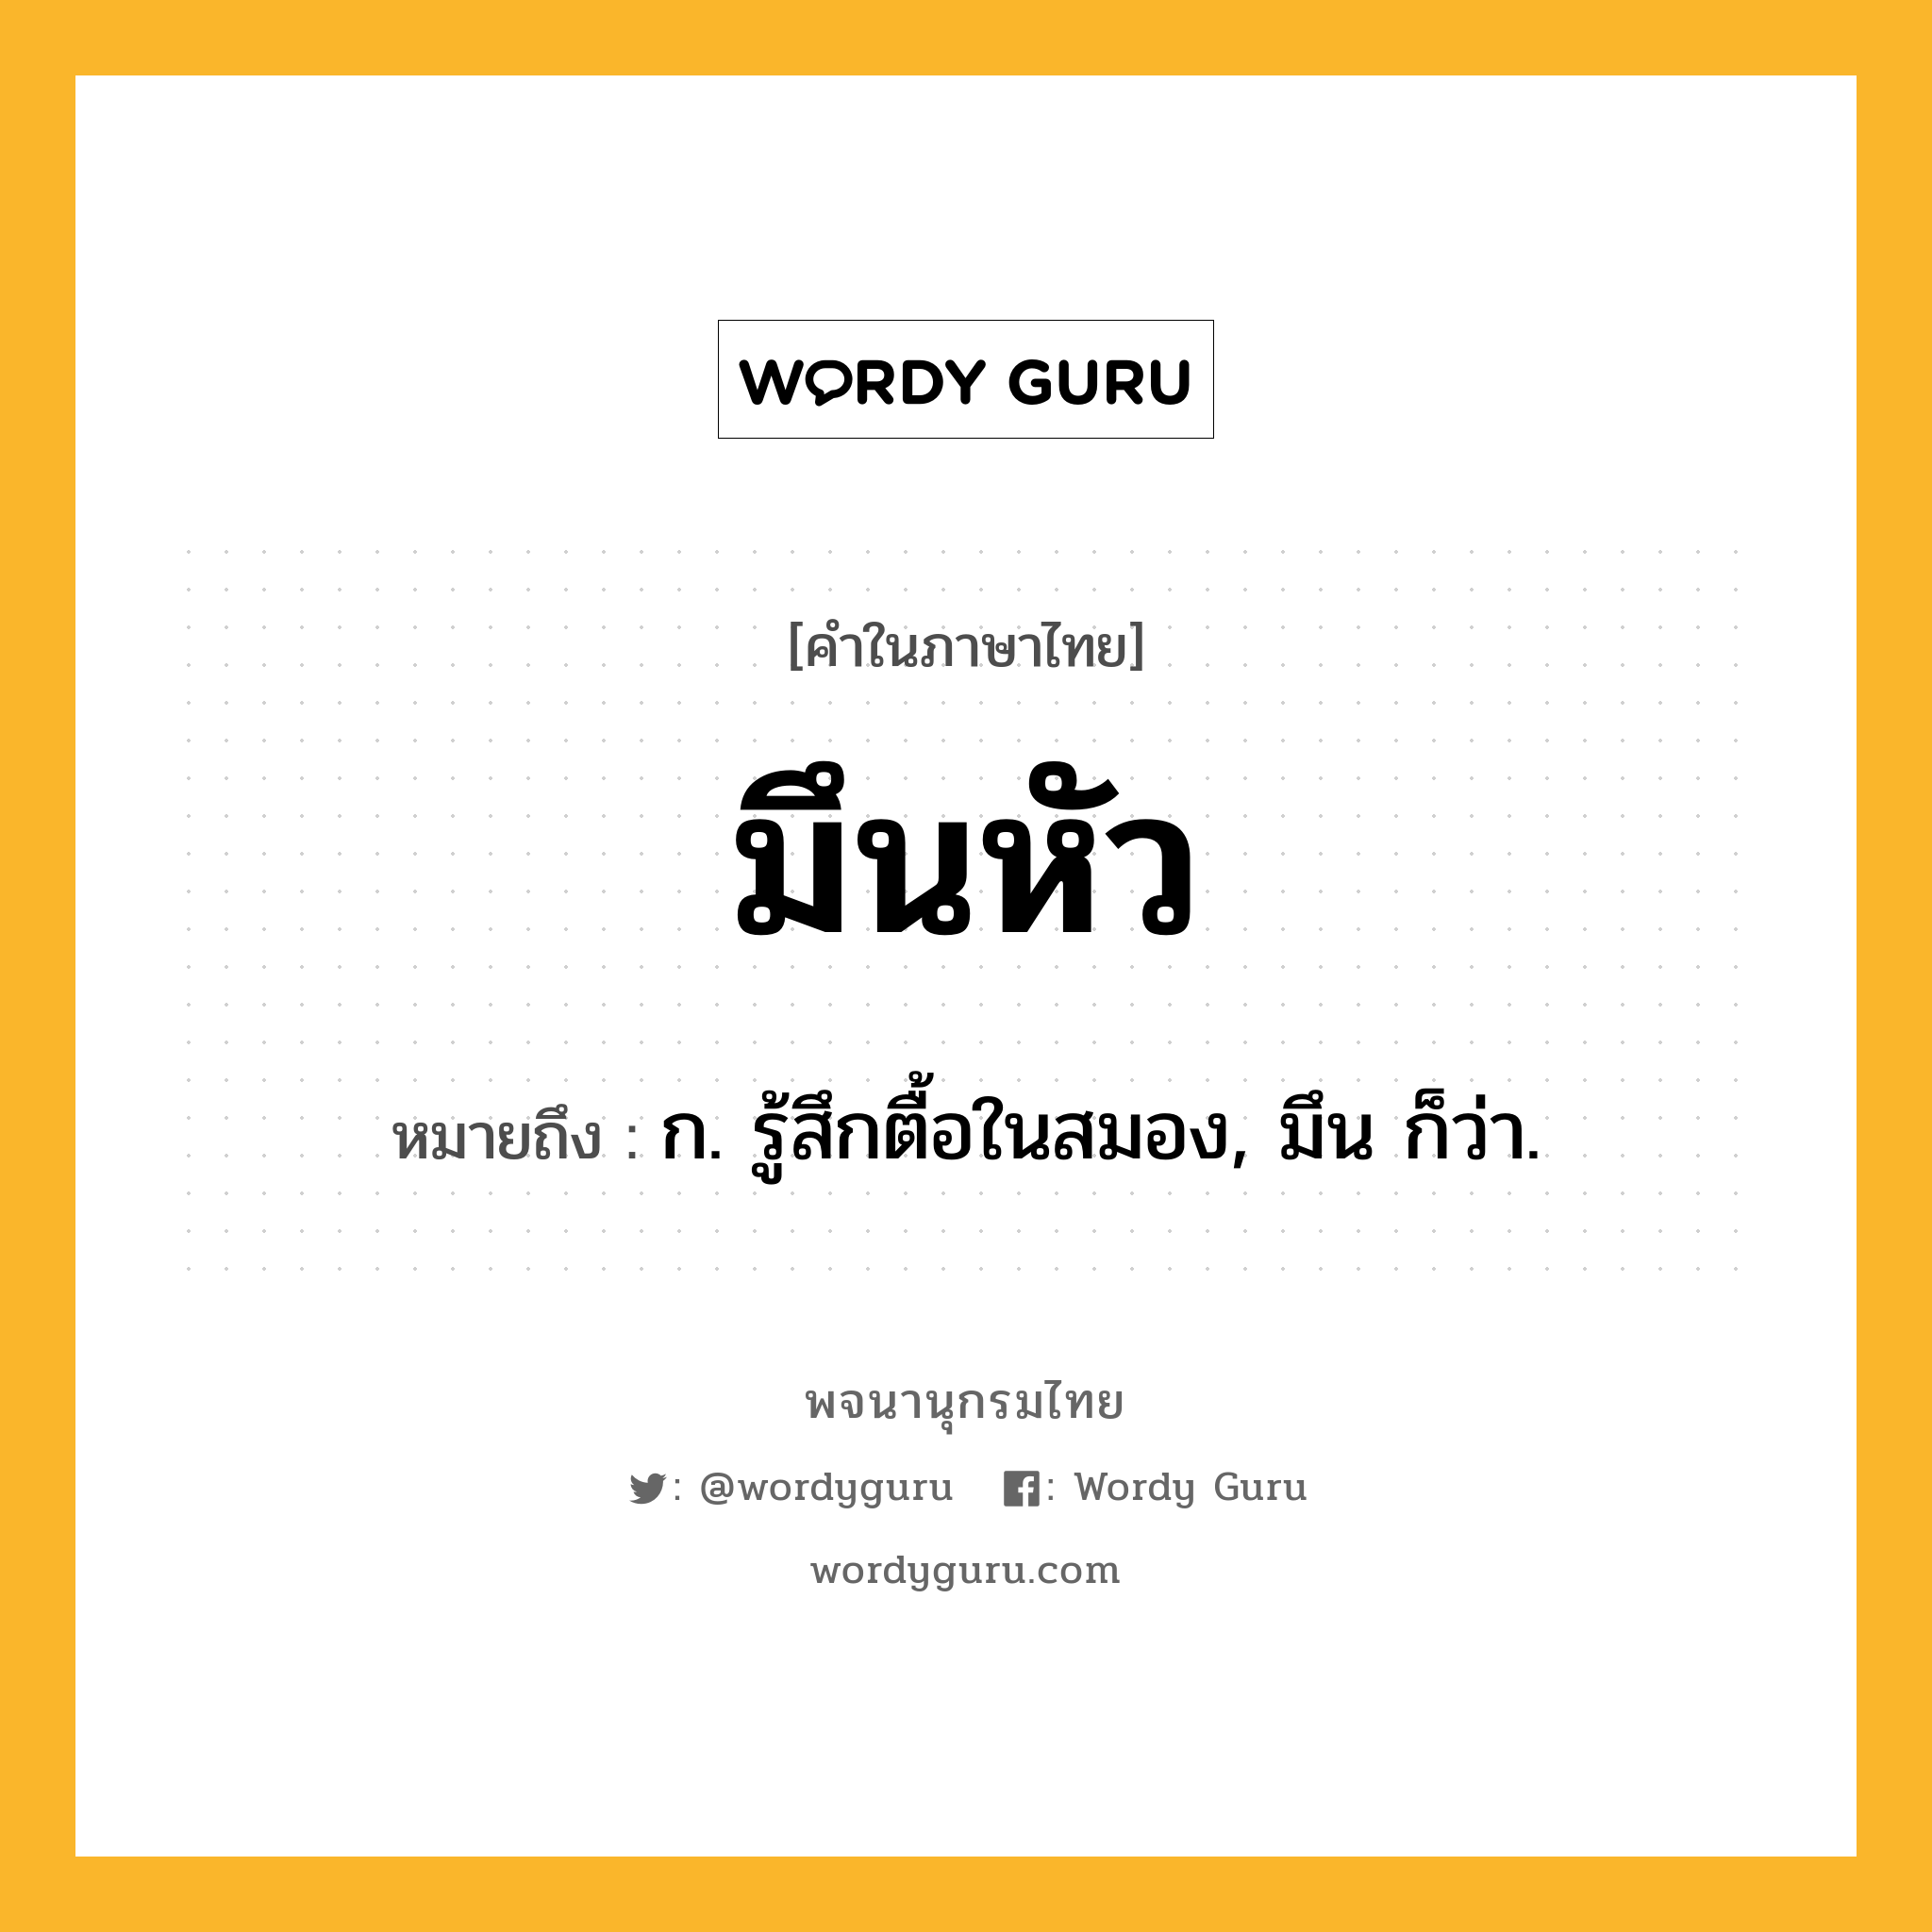 มึนหัว ความหมาย หมายถึงอะไร?, คำในภาษาไทย มึนหัว หมายถึง ก. รู้สึกตื้อในสมอง, มึน ก็ว่า.